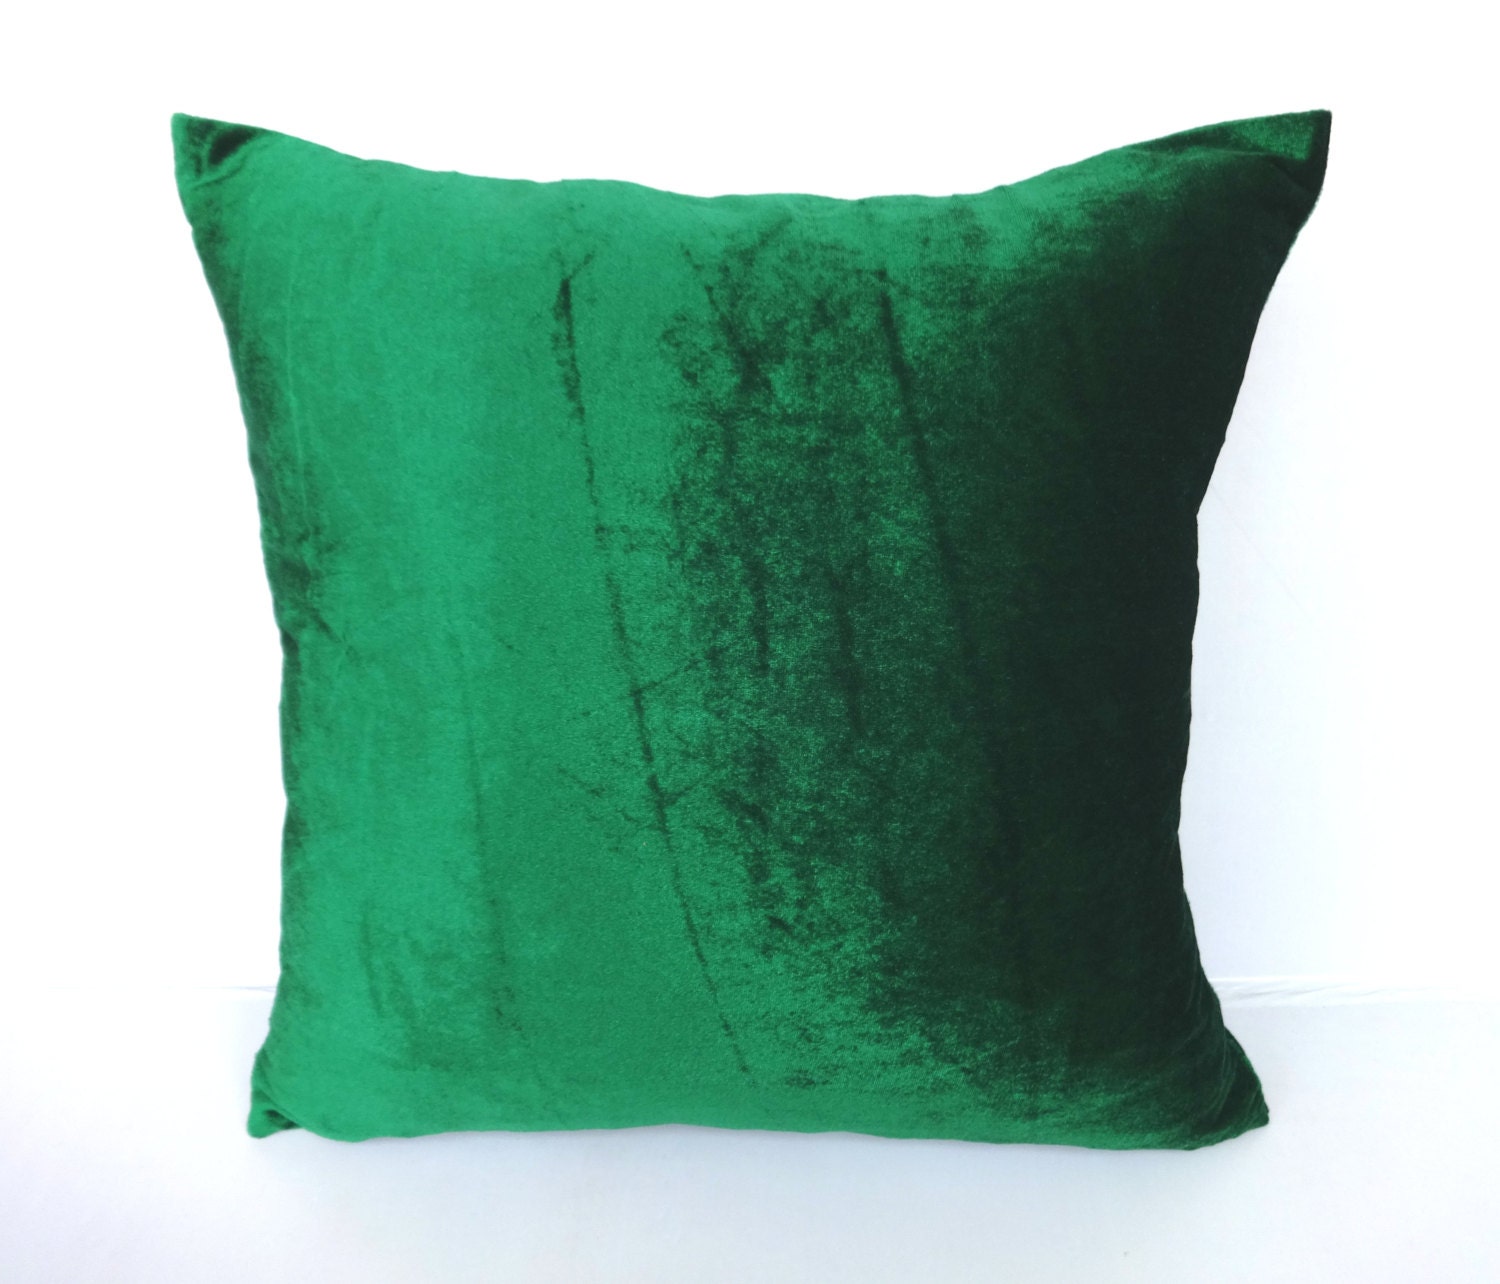  Green  velvet  pillow  cover Kelly green  velvat pillow  